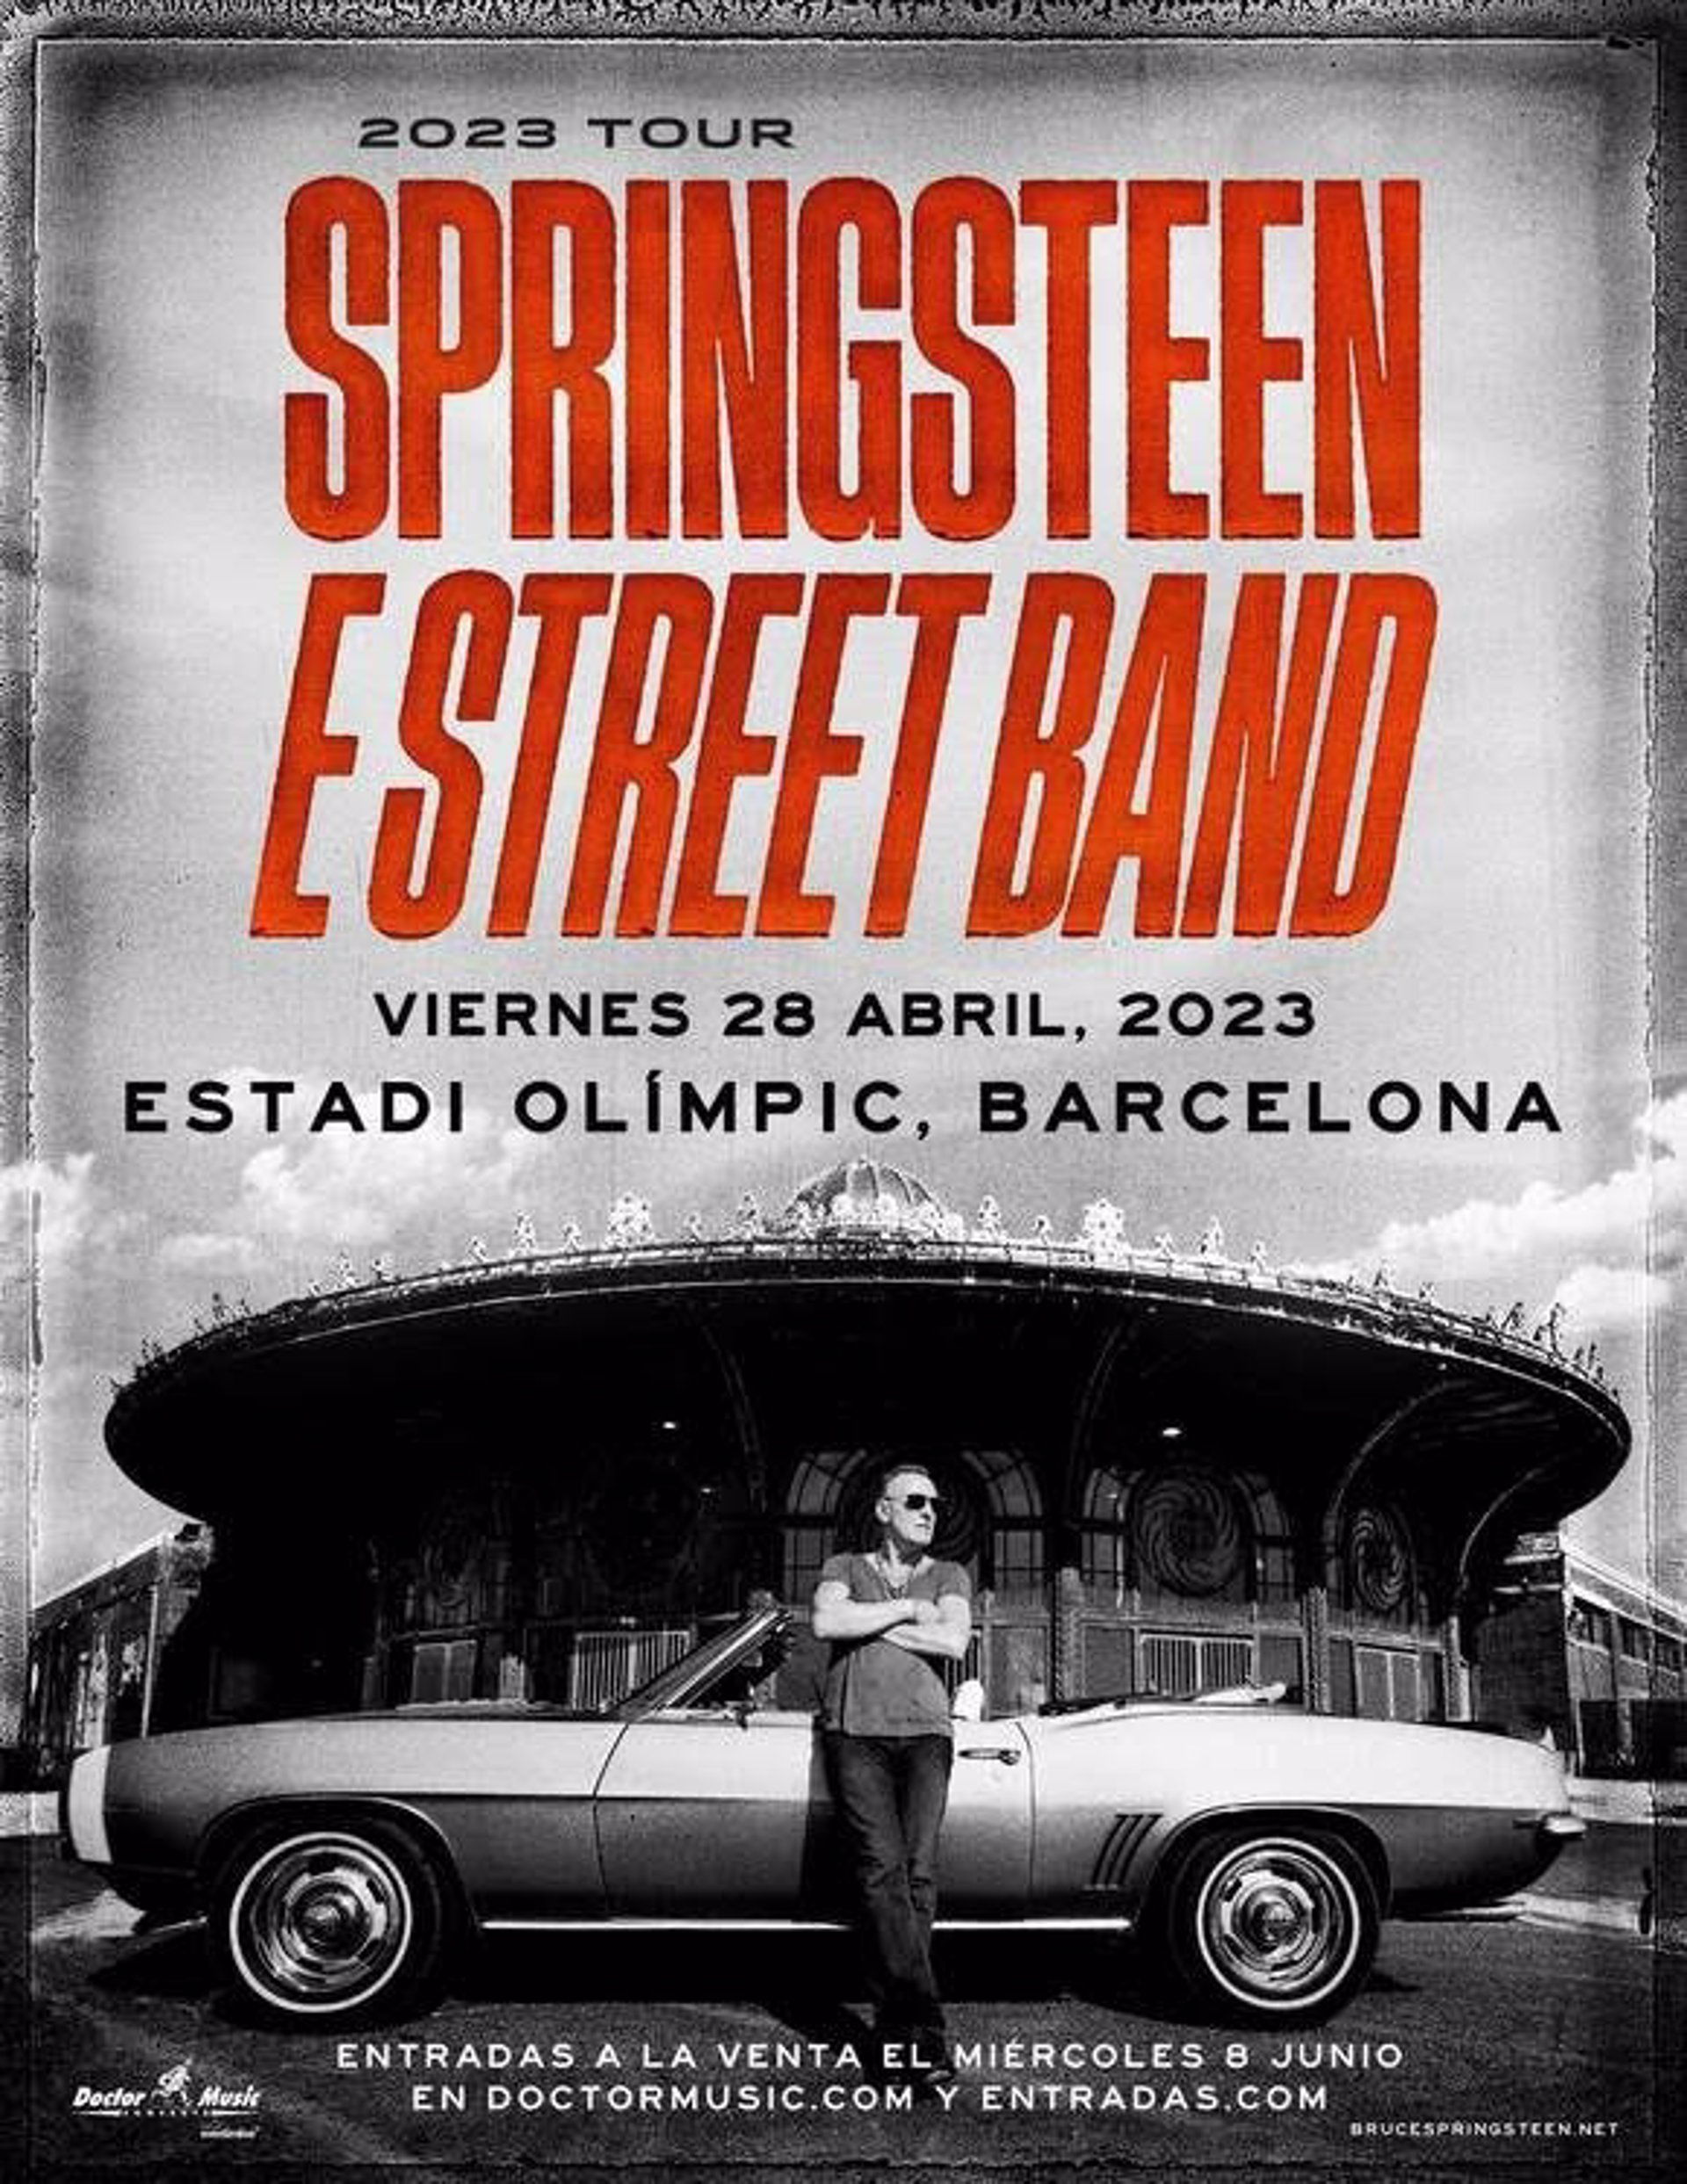 Bruce Springsteen anuncia una gira europea que empezará en Barcelona el 28 de abril de 2023